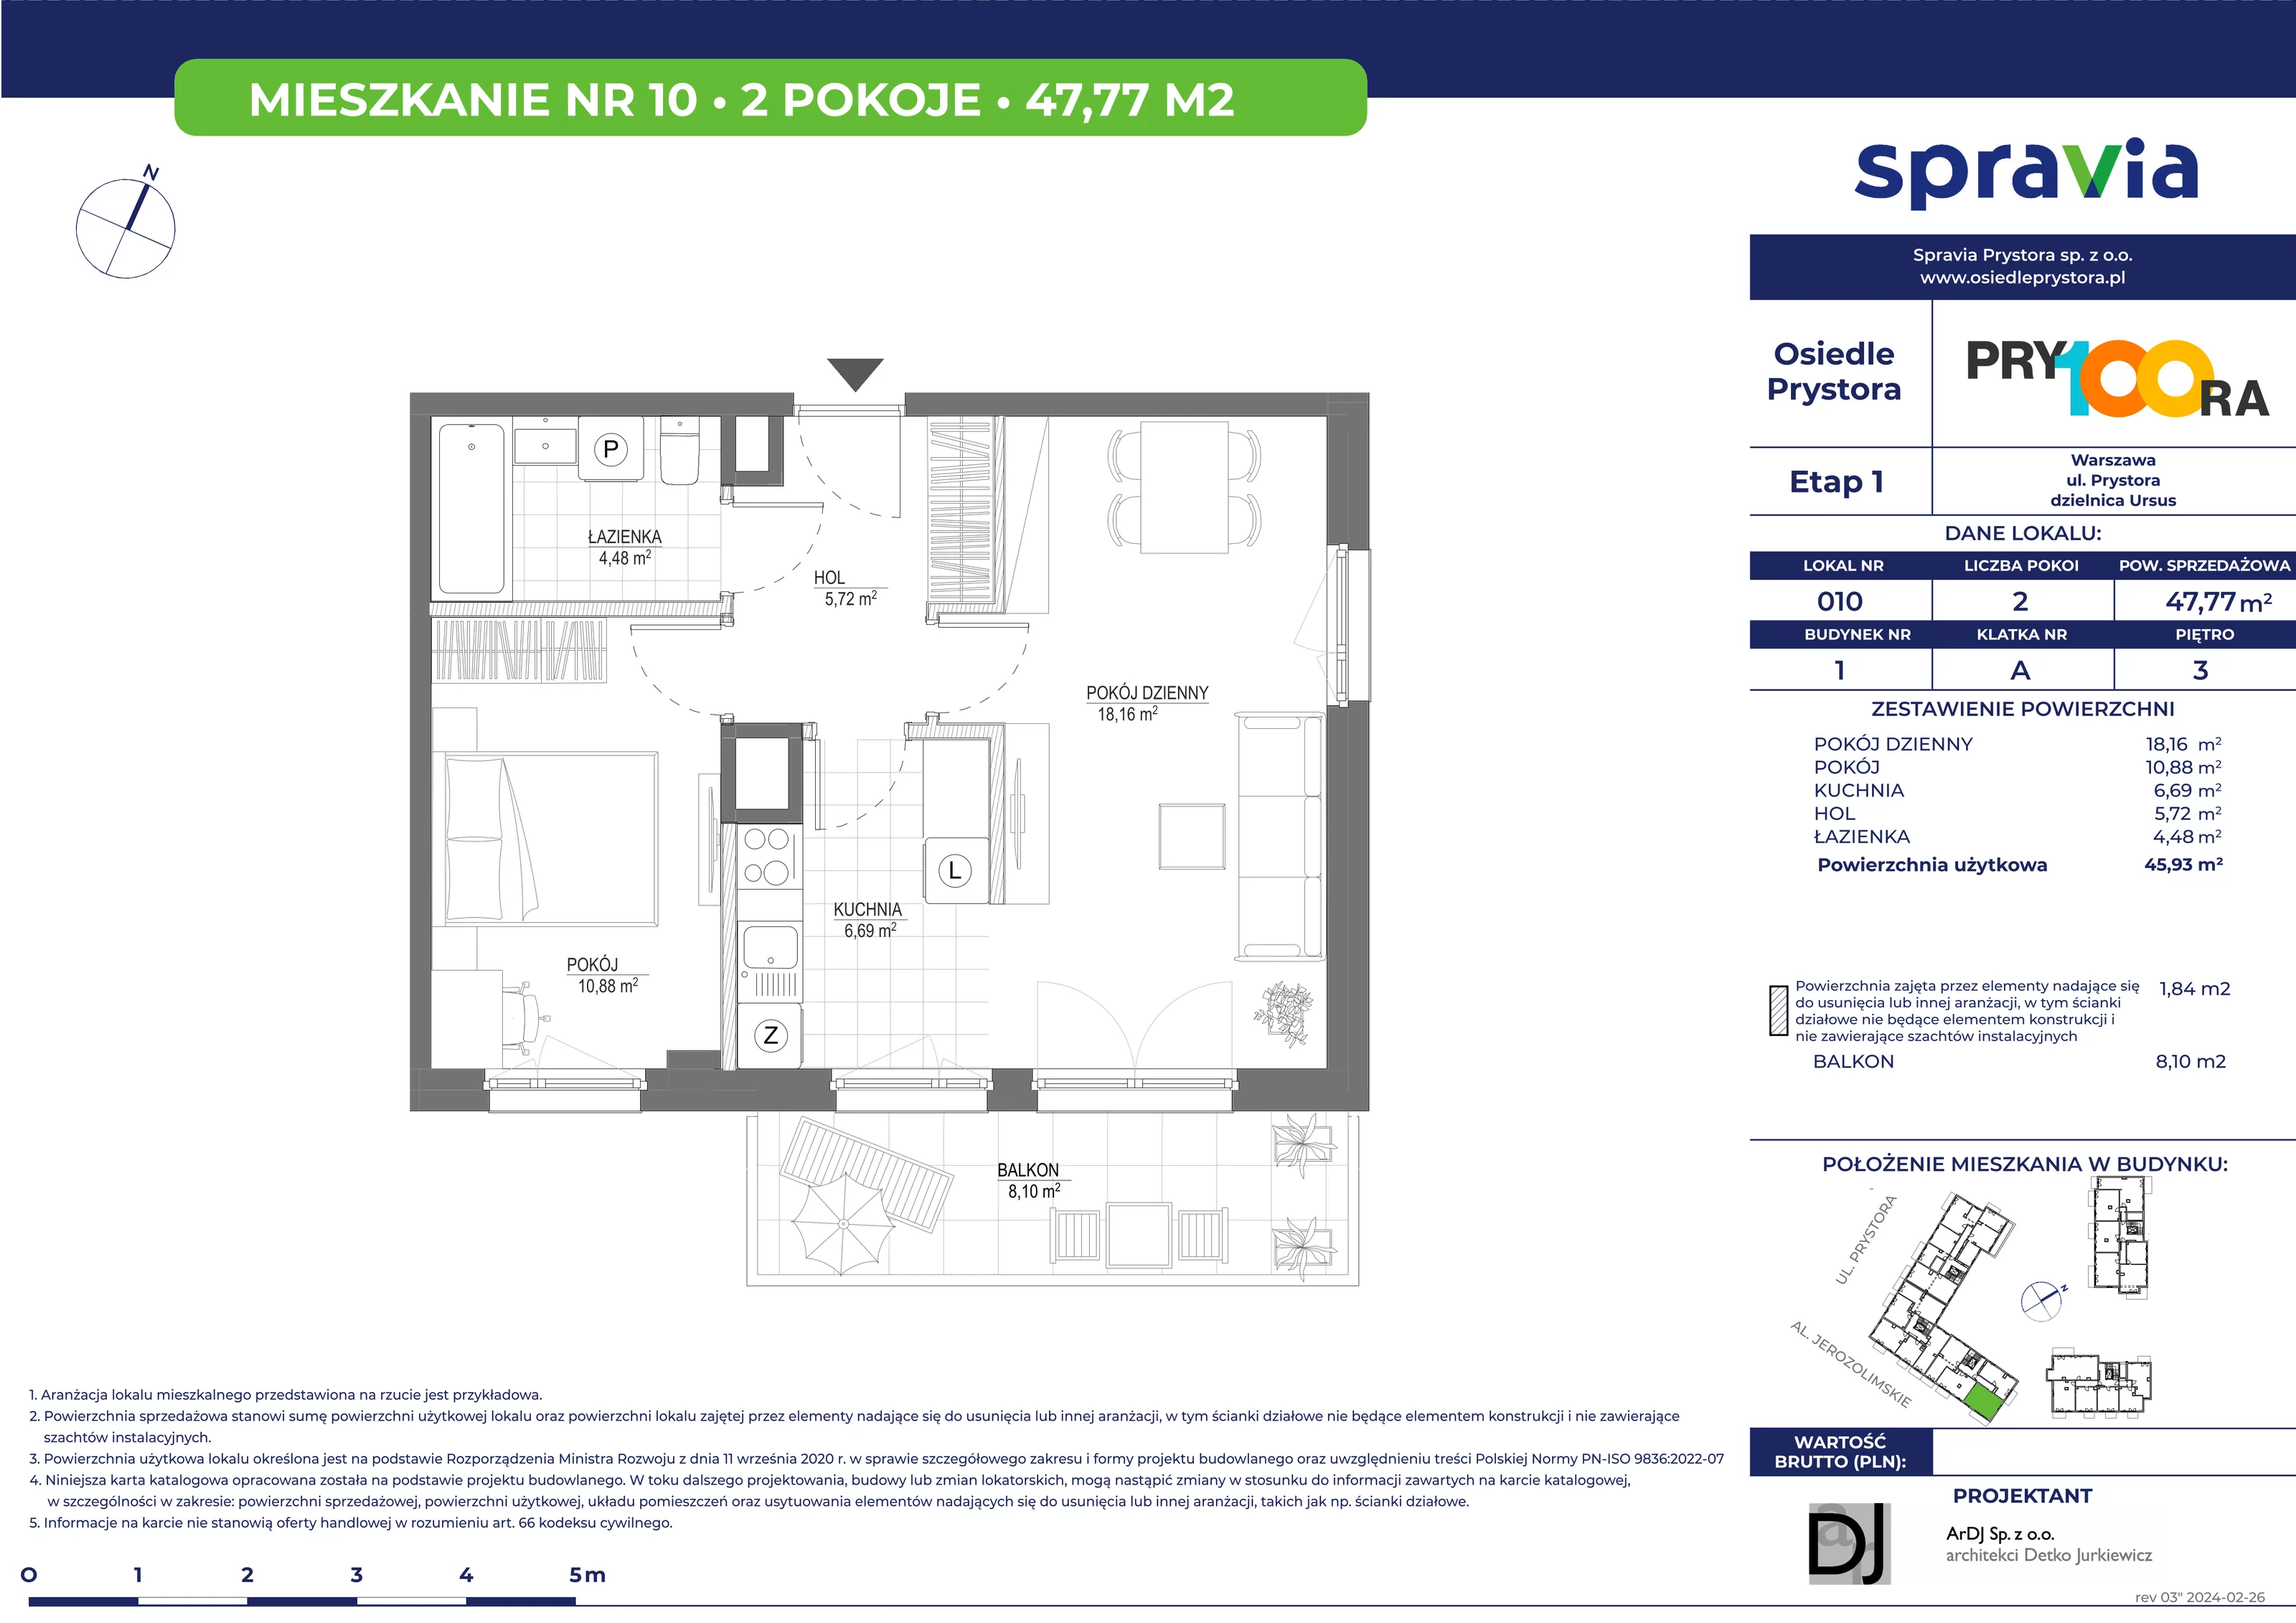 Mieszkanie 47,77 m², piętro 3, oferta nr 10, Osiedle Prystora, Warszawa, Ursus, Skorosze, ul. Prystora